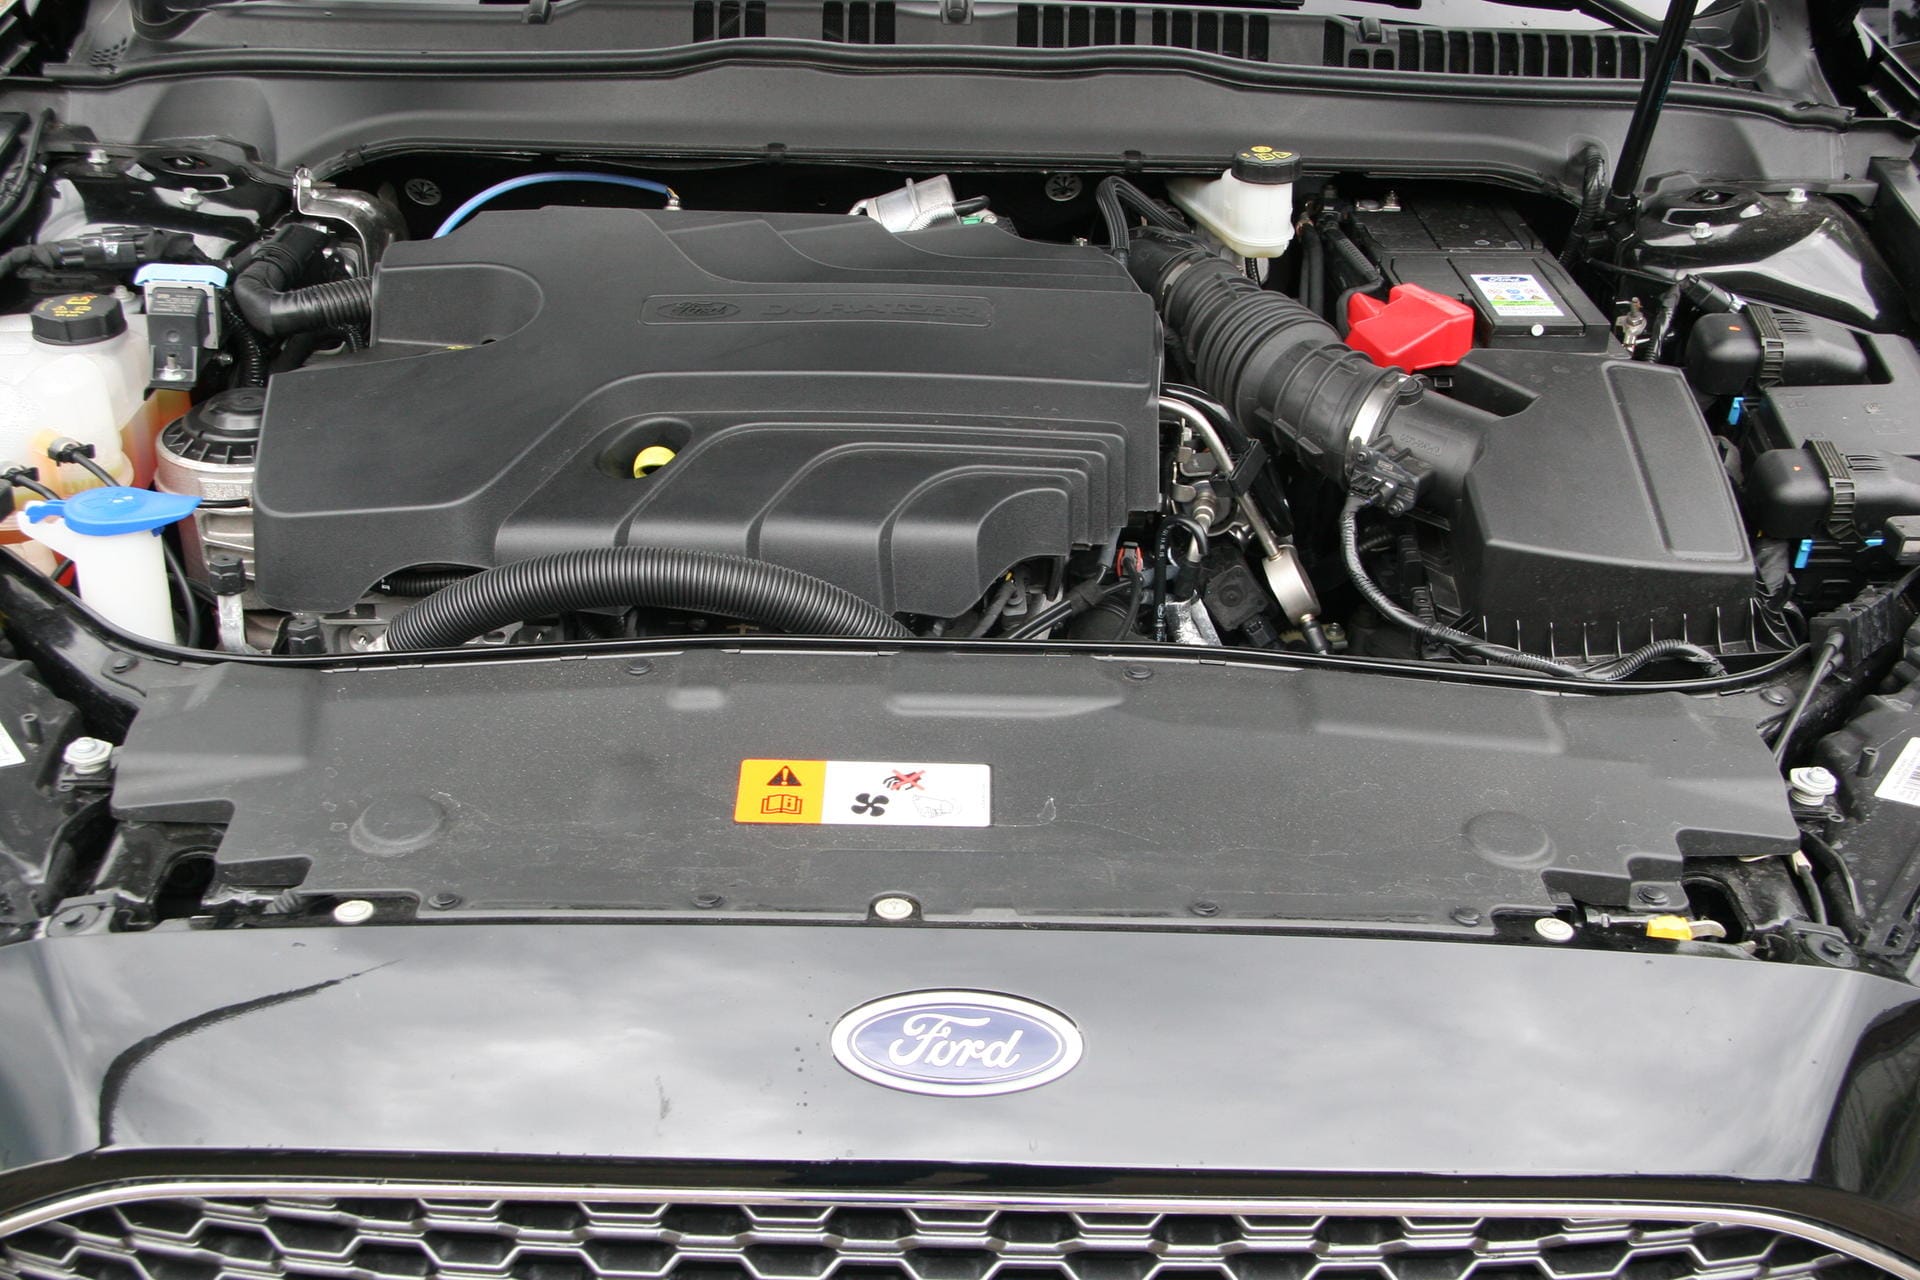 Bärenstark zeigt sich der Zweiliter-Diesel mit 210 PS.